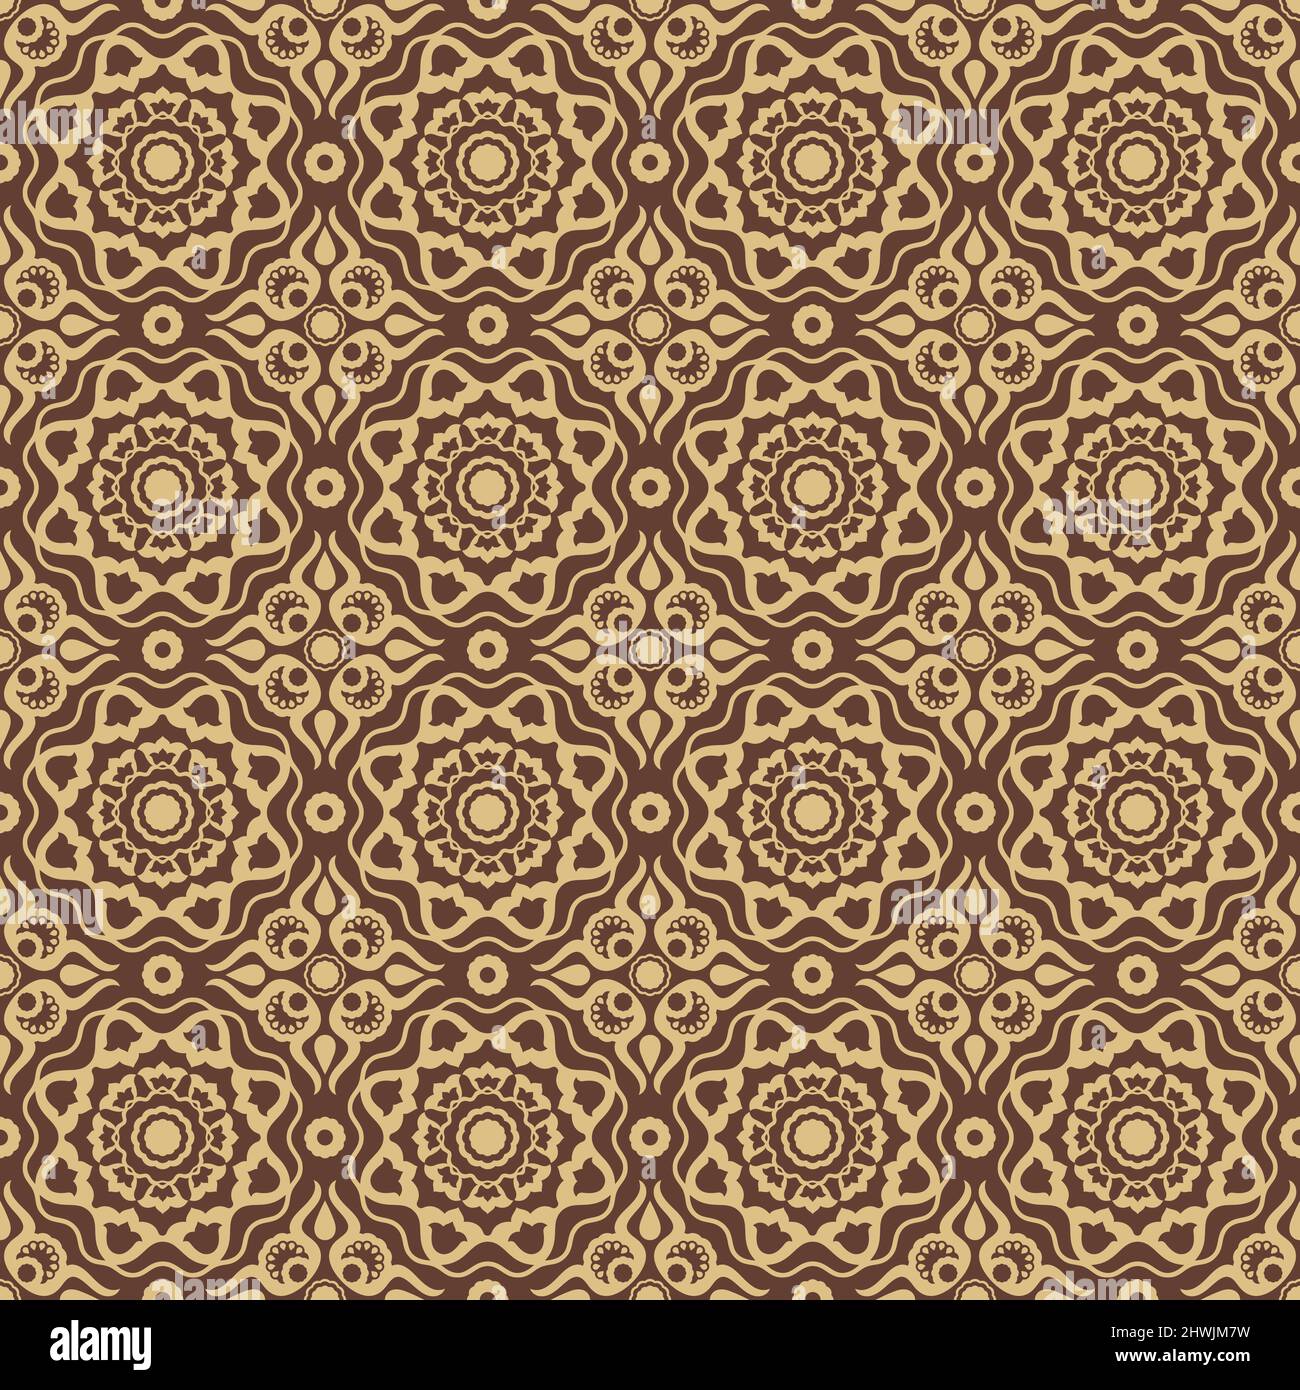 Nahtloses ornamentales Vektor-Muster in goldener Farbe mit orientalischem osmanischen Kaftan-Stil mit stilisierten Tulpenmotiven. Für Kleidung, Stoffdrucke, Stock Vektor